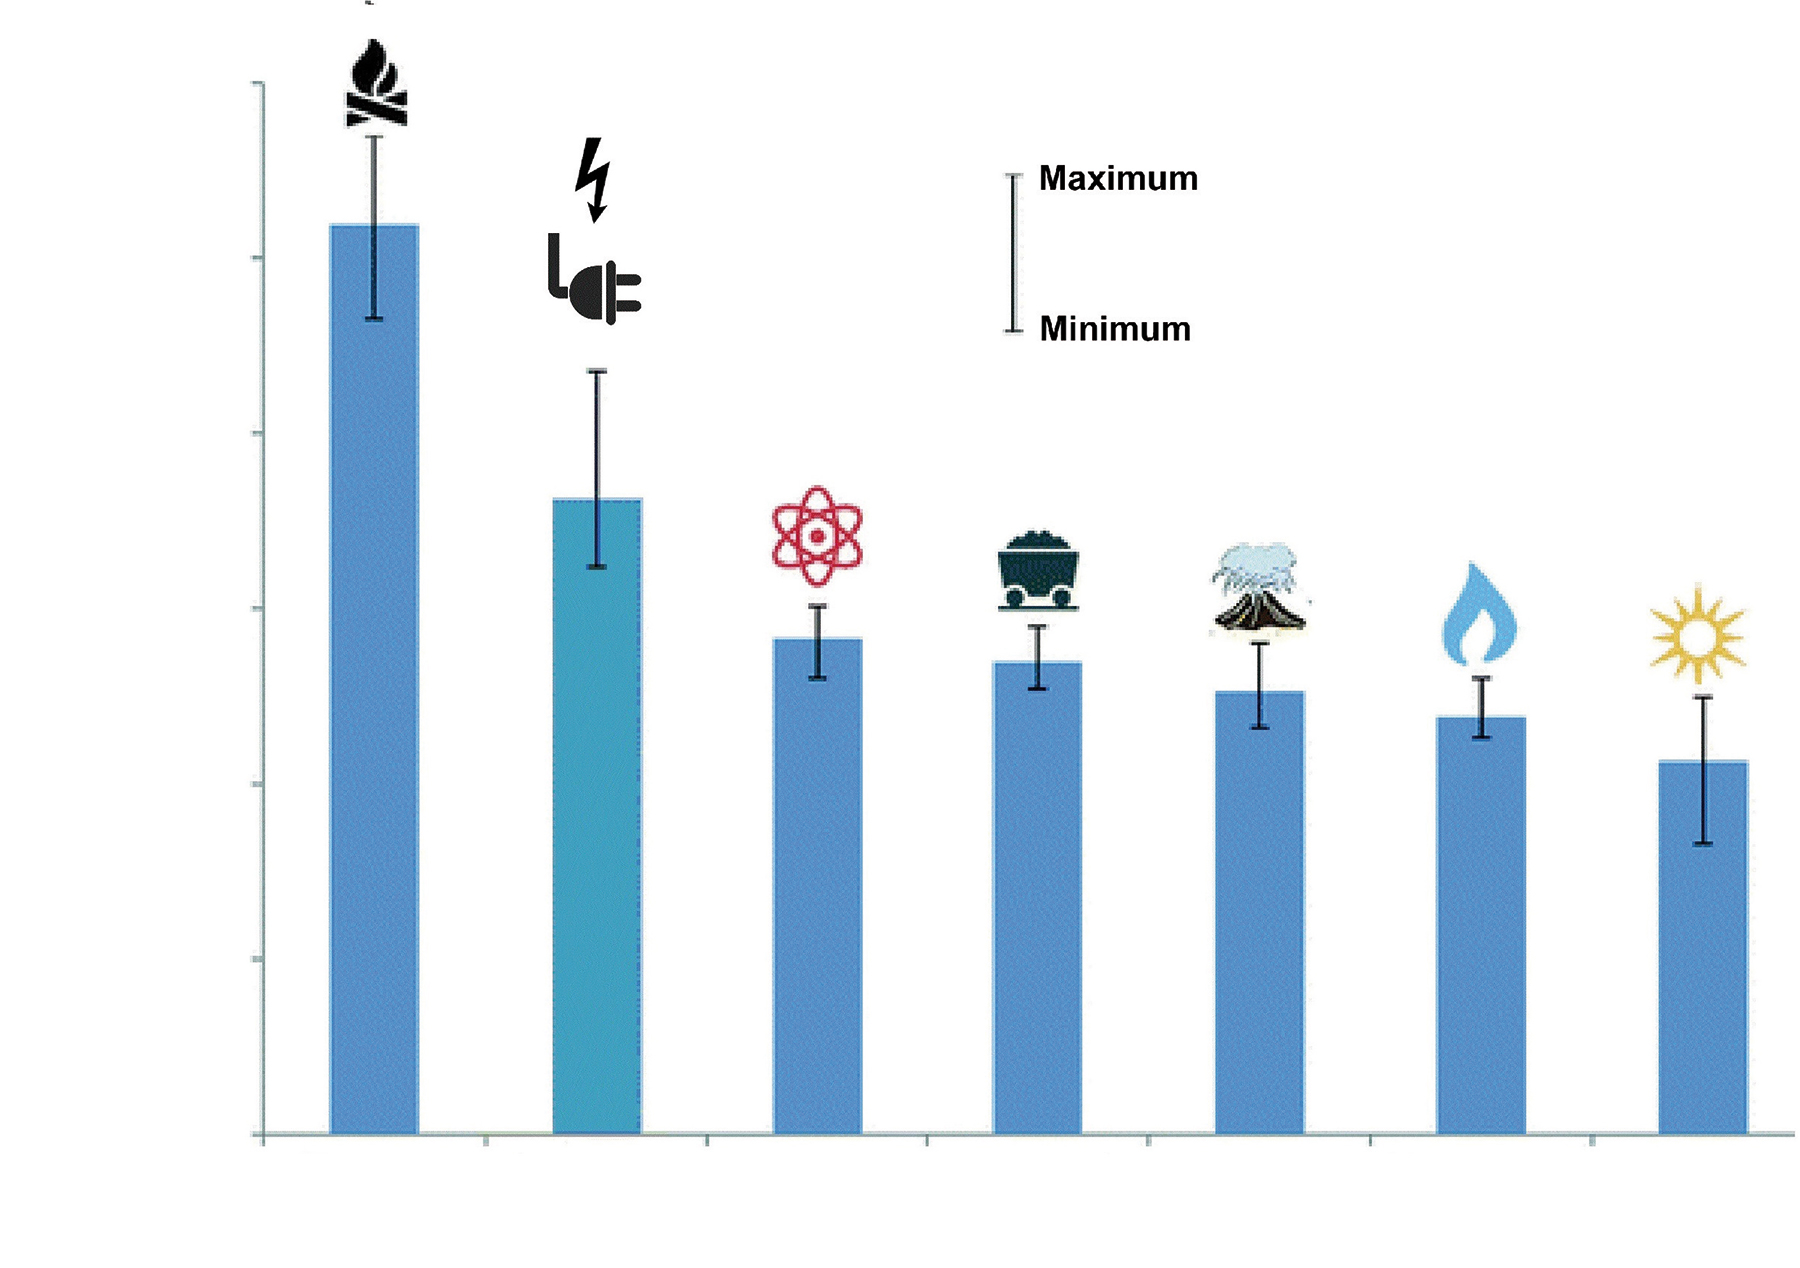 Obr. 3 Průměrná vodní stopa produkující 1 kWh tepla podle zdroje (dle statistik 2008–2012) [18, 19]; vodní stopa (osa y) je logaritmická. U každého zdroje je uveden rozsah ukazující minimální a maximální hodnoty vodní stopy v rámci celého „životního cyklu“ 1kWh vyrobeného tepla.